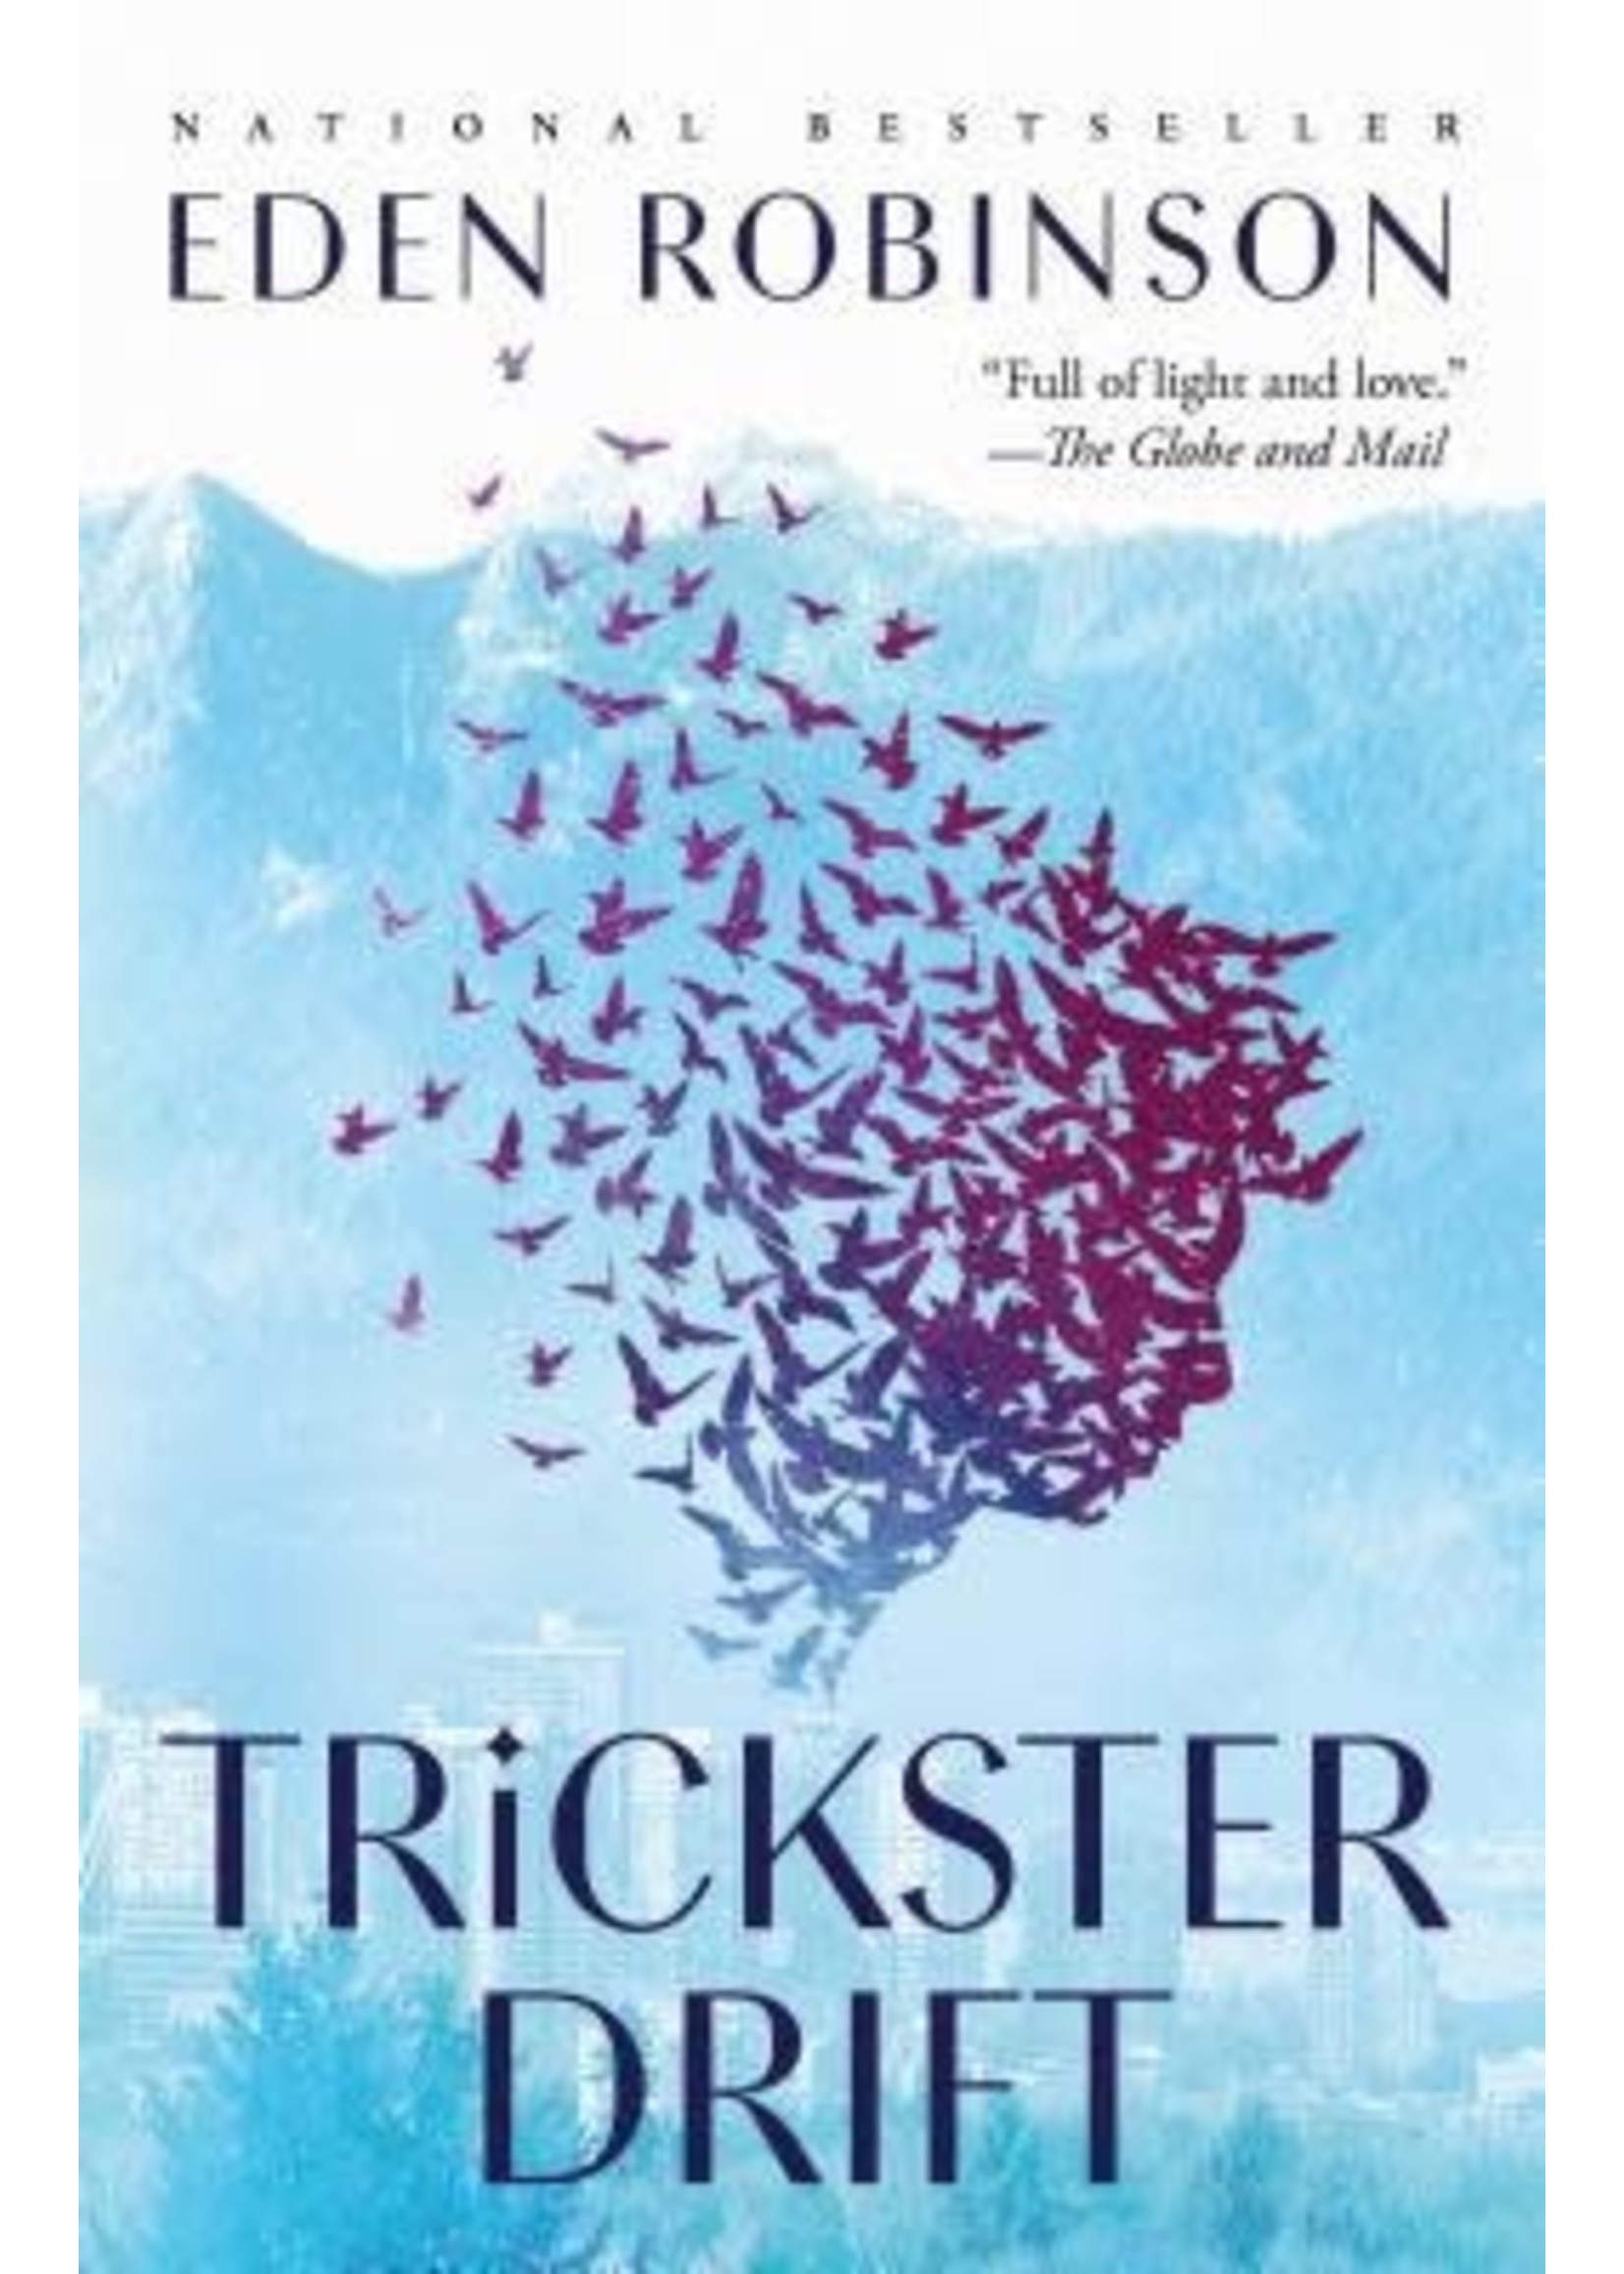 Trickster Drift (Trickster #2) by Eden Robinson